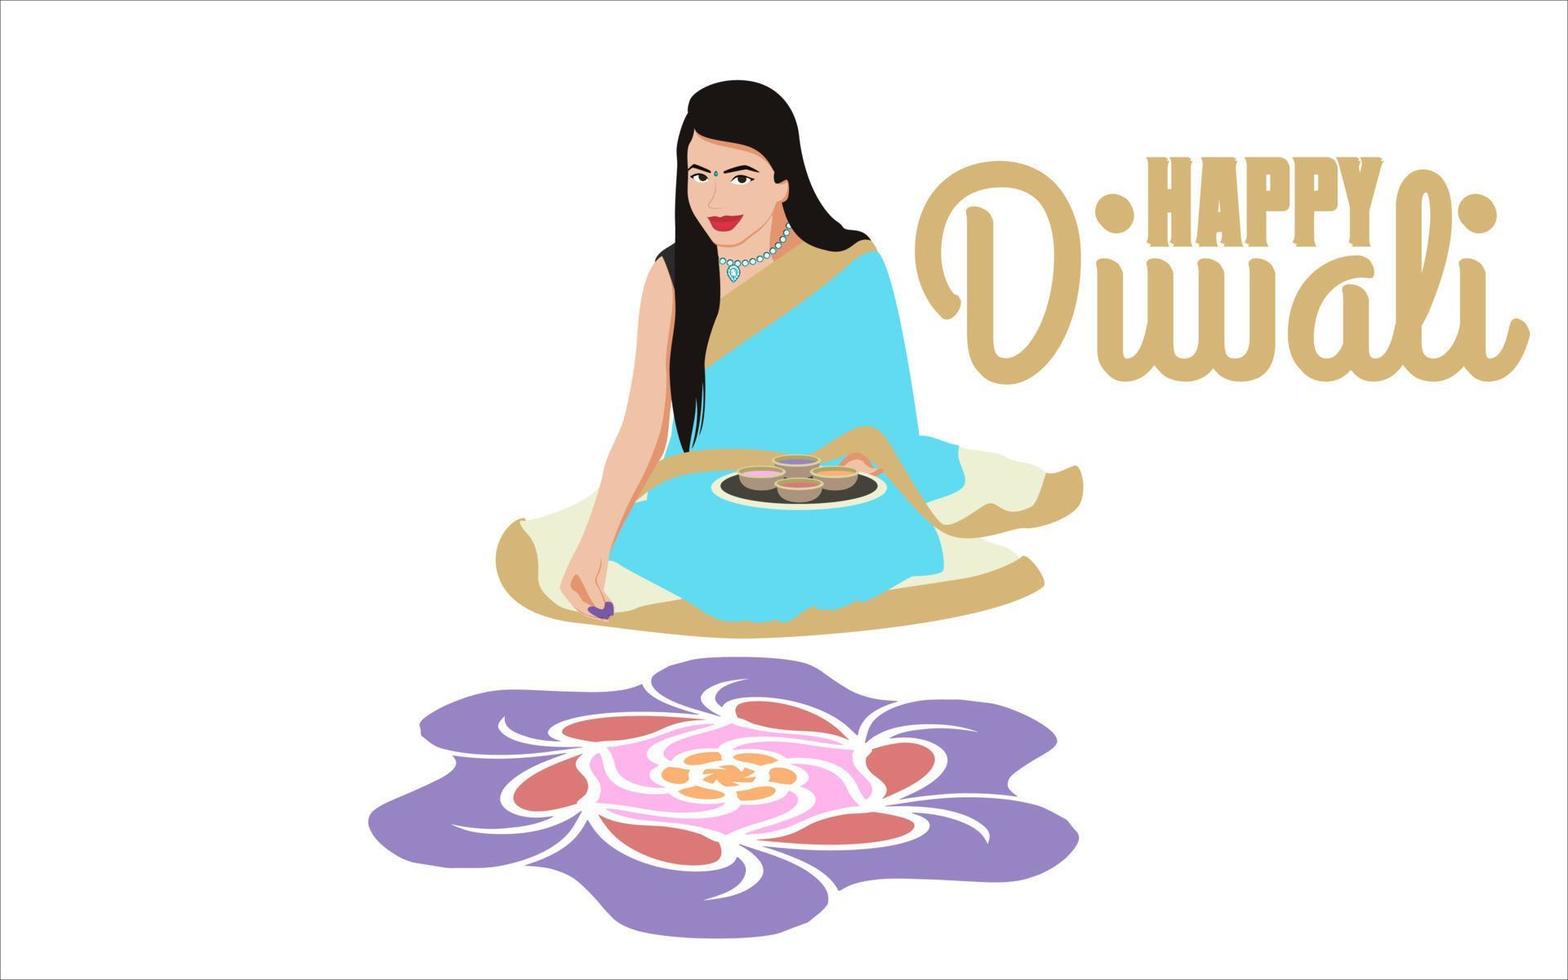 donne indiane che fanno rangoli per la celebrazione del diwali, felice illustrazione vettoriale diwali per i social media.